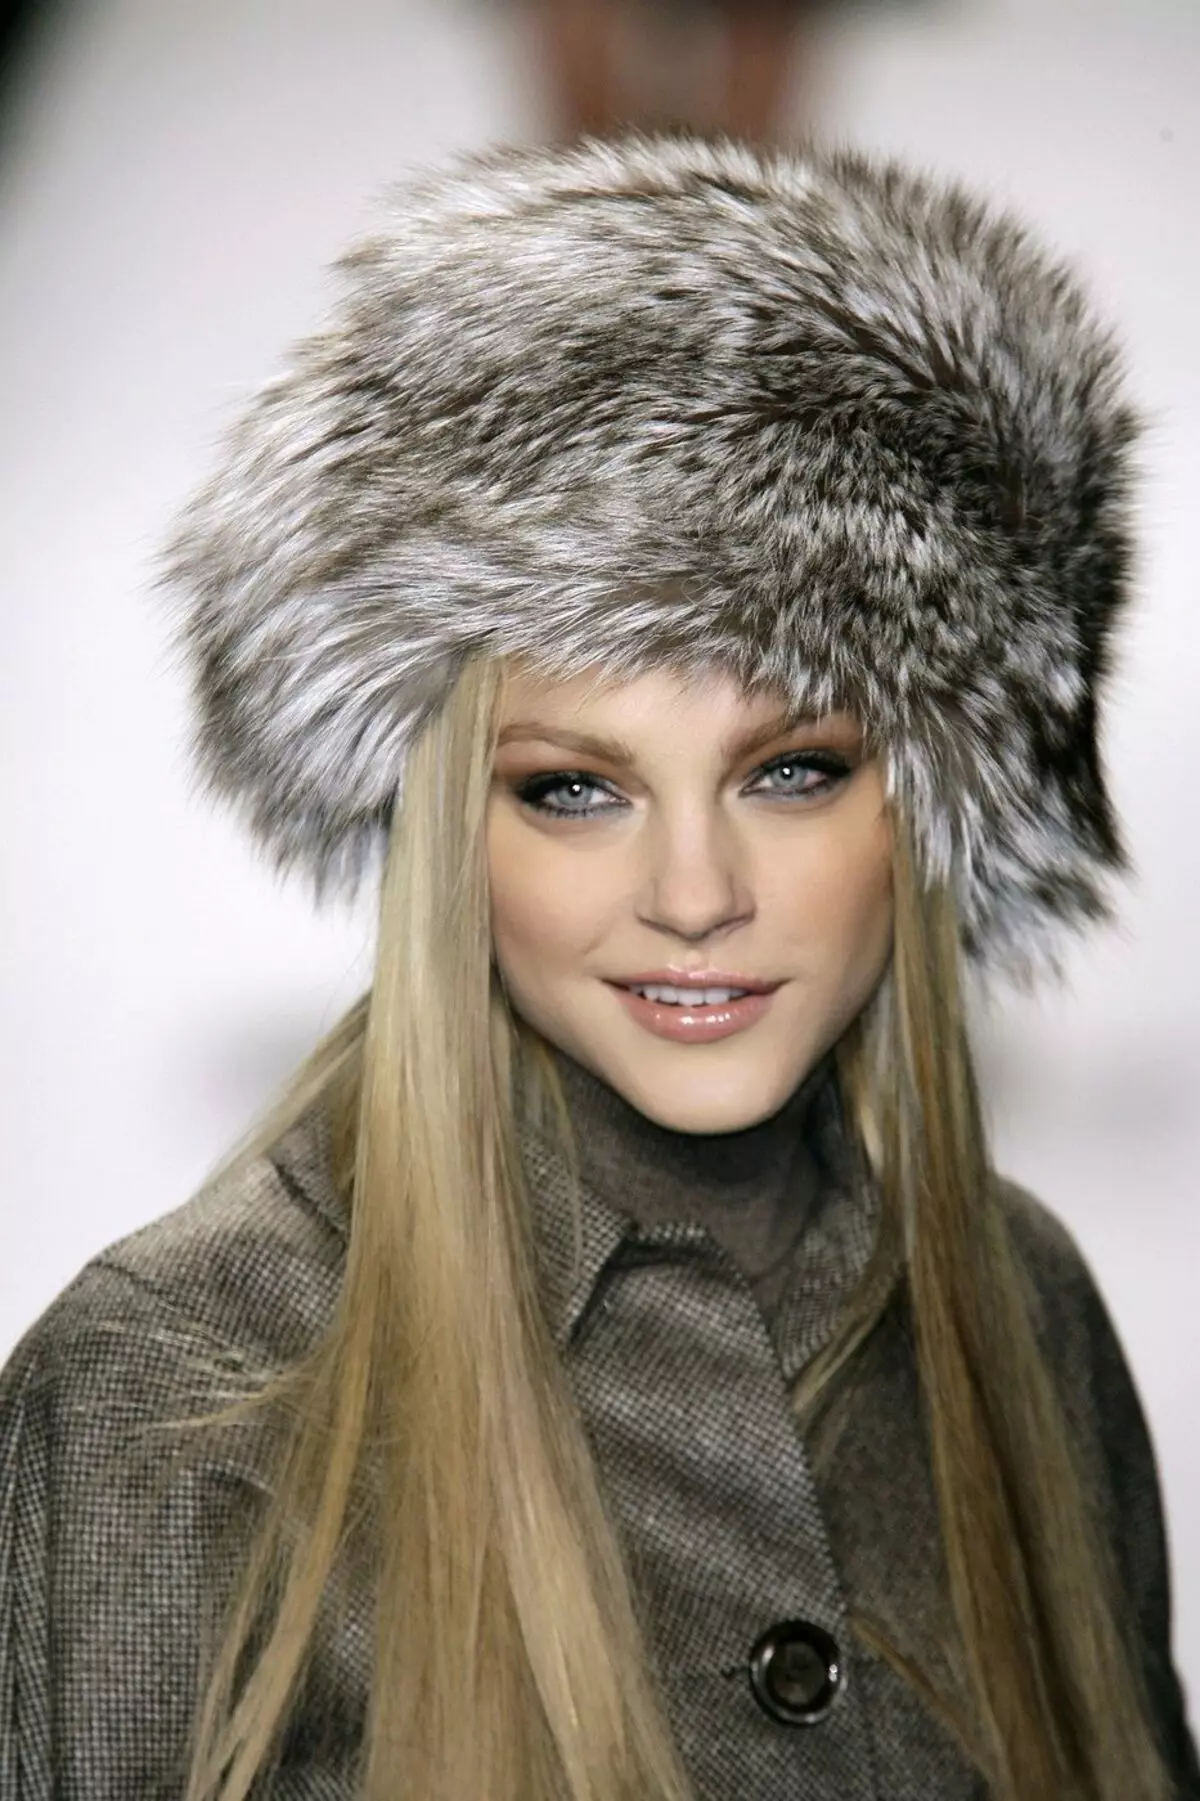 Hats femení de pell (117 fotos): cinta de barret, models de moda 2021-2022 Fabricat en pell Chernoburki, visó i altres pells naturals 2949_97